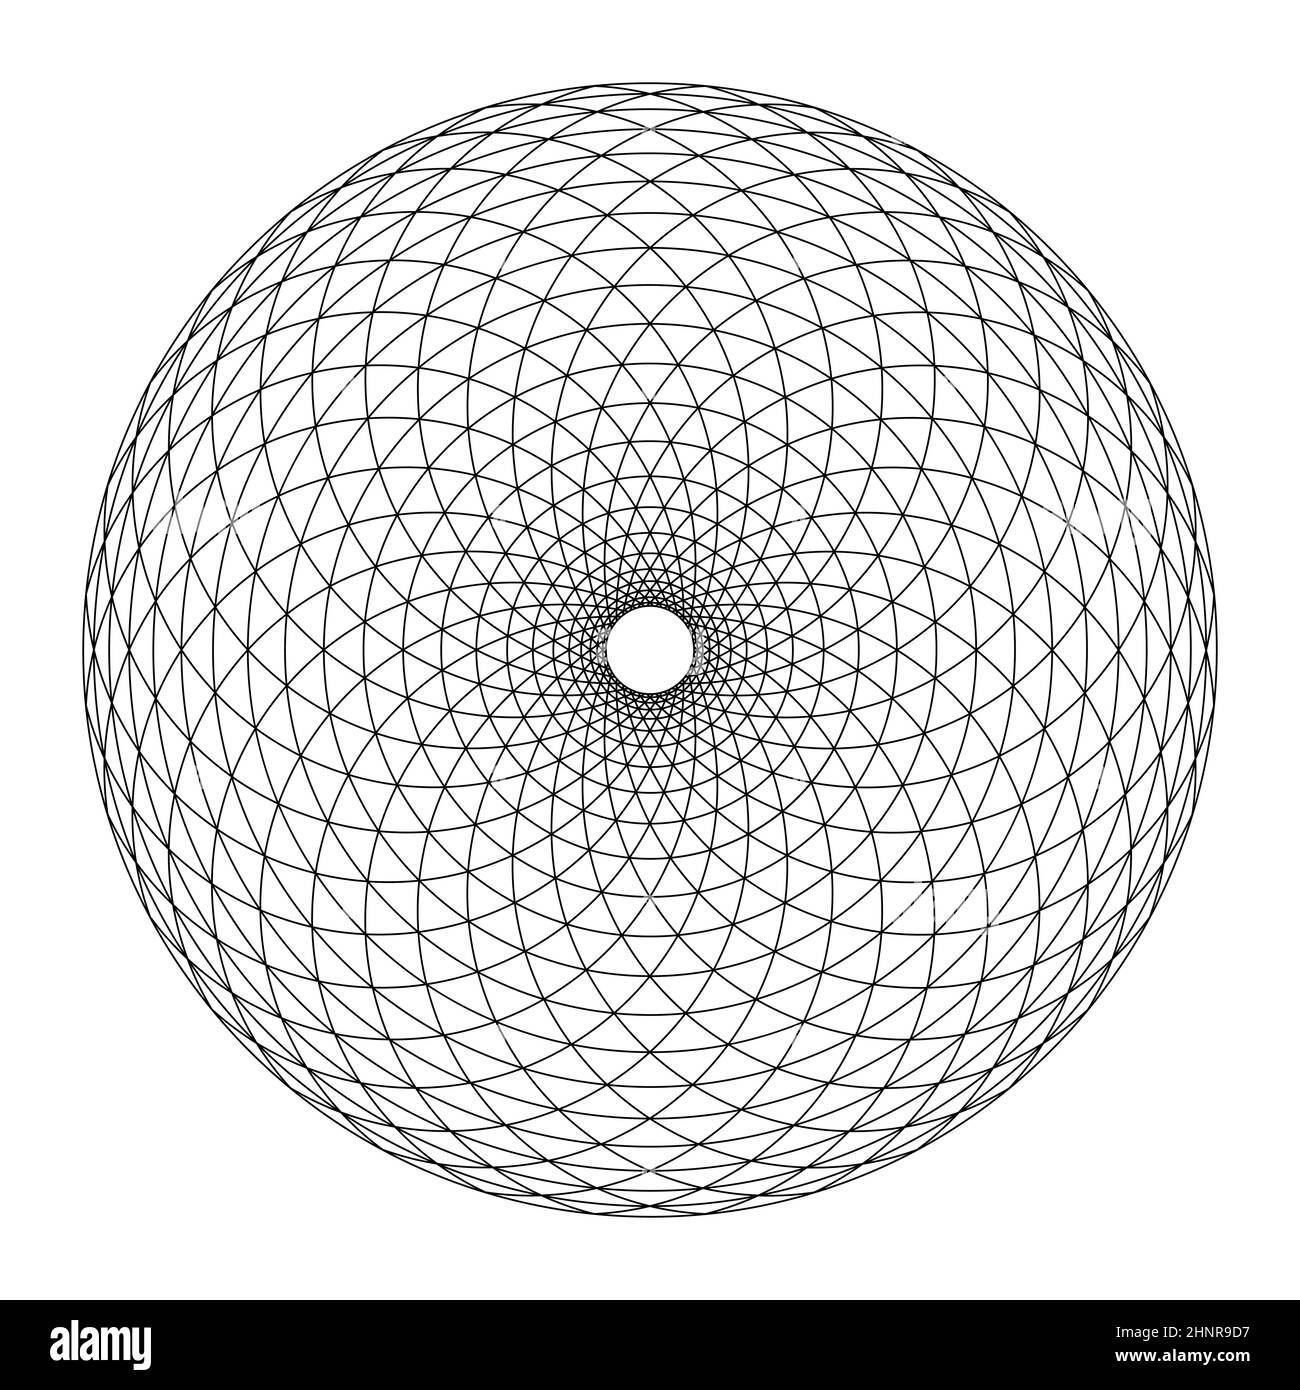 Cerchio con motivo Fibonacci triangolare. Area circolare, formata da archi, disposta a spirale, attraversata da cerchi, creando triangoli di piegatura. Foto Stock